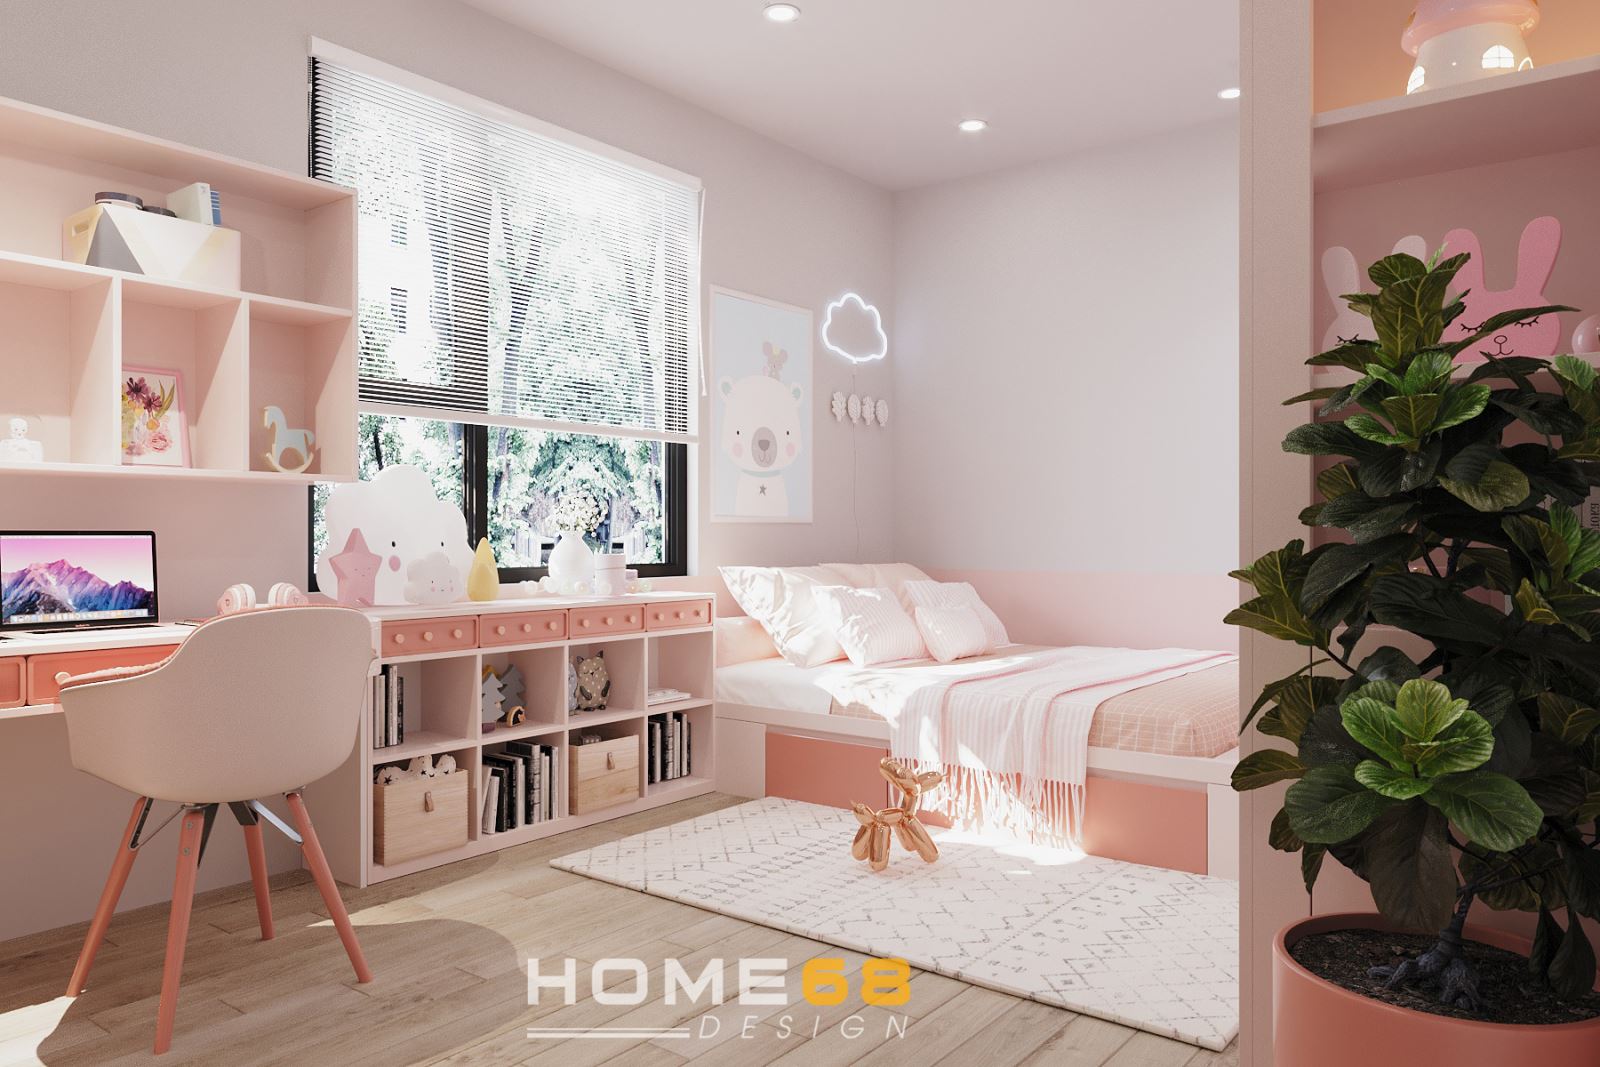 HOME68 thiết kế phòng ngủ bé gái tone màu hồng đáng yêu, sinh động